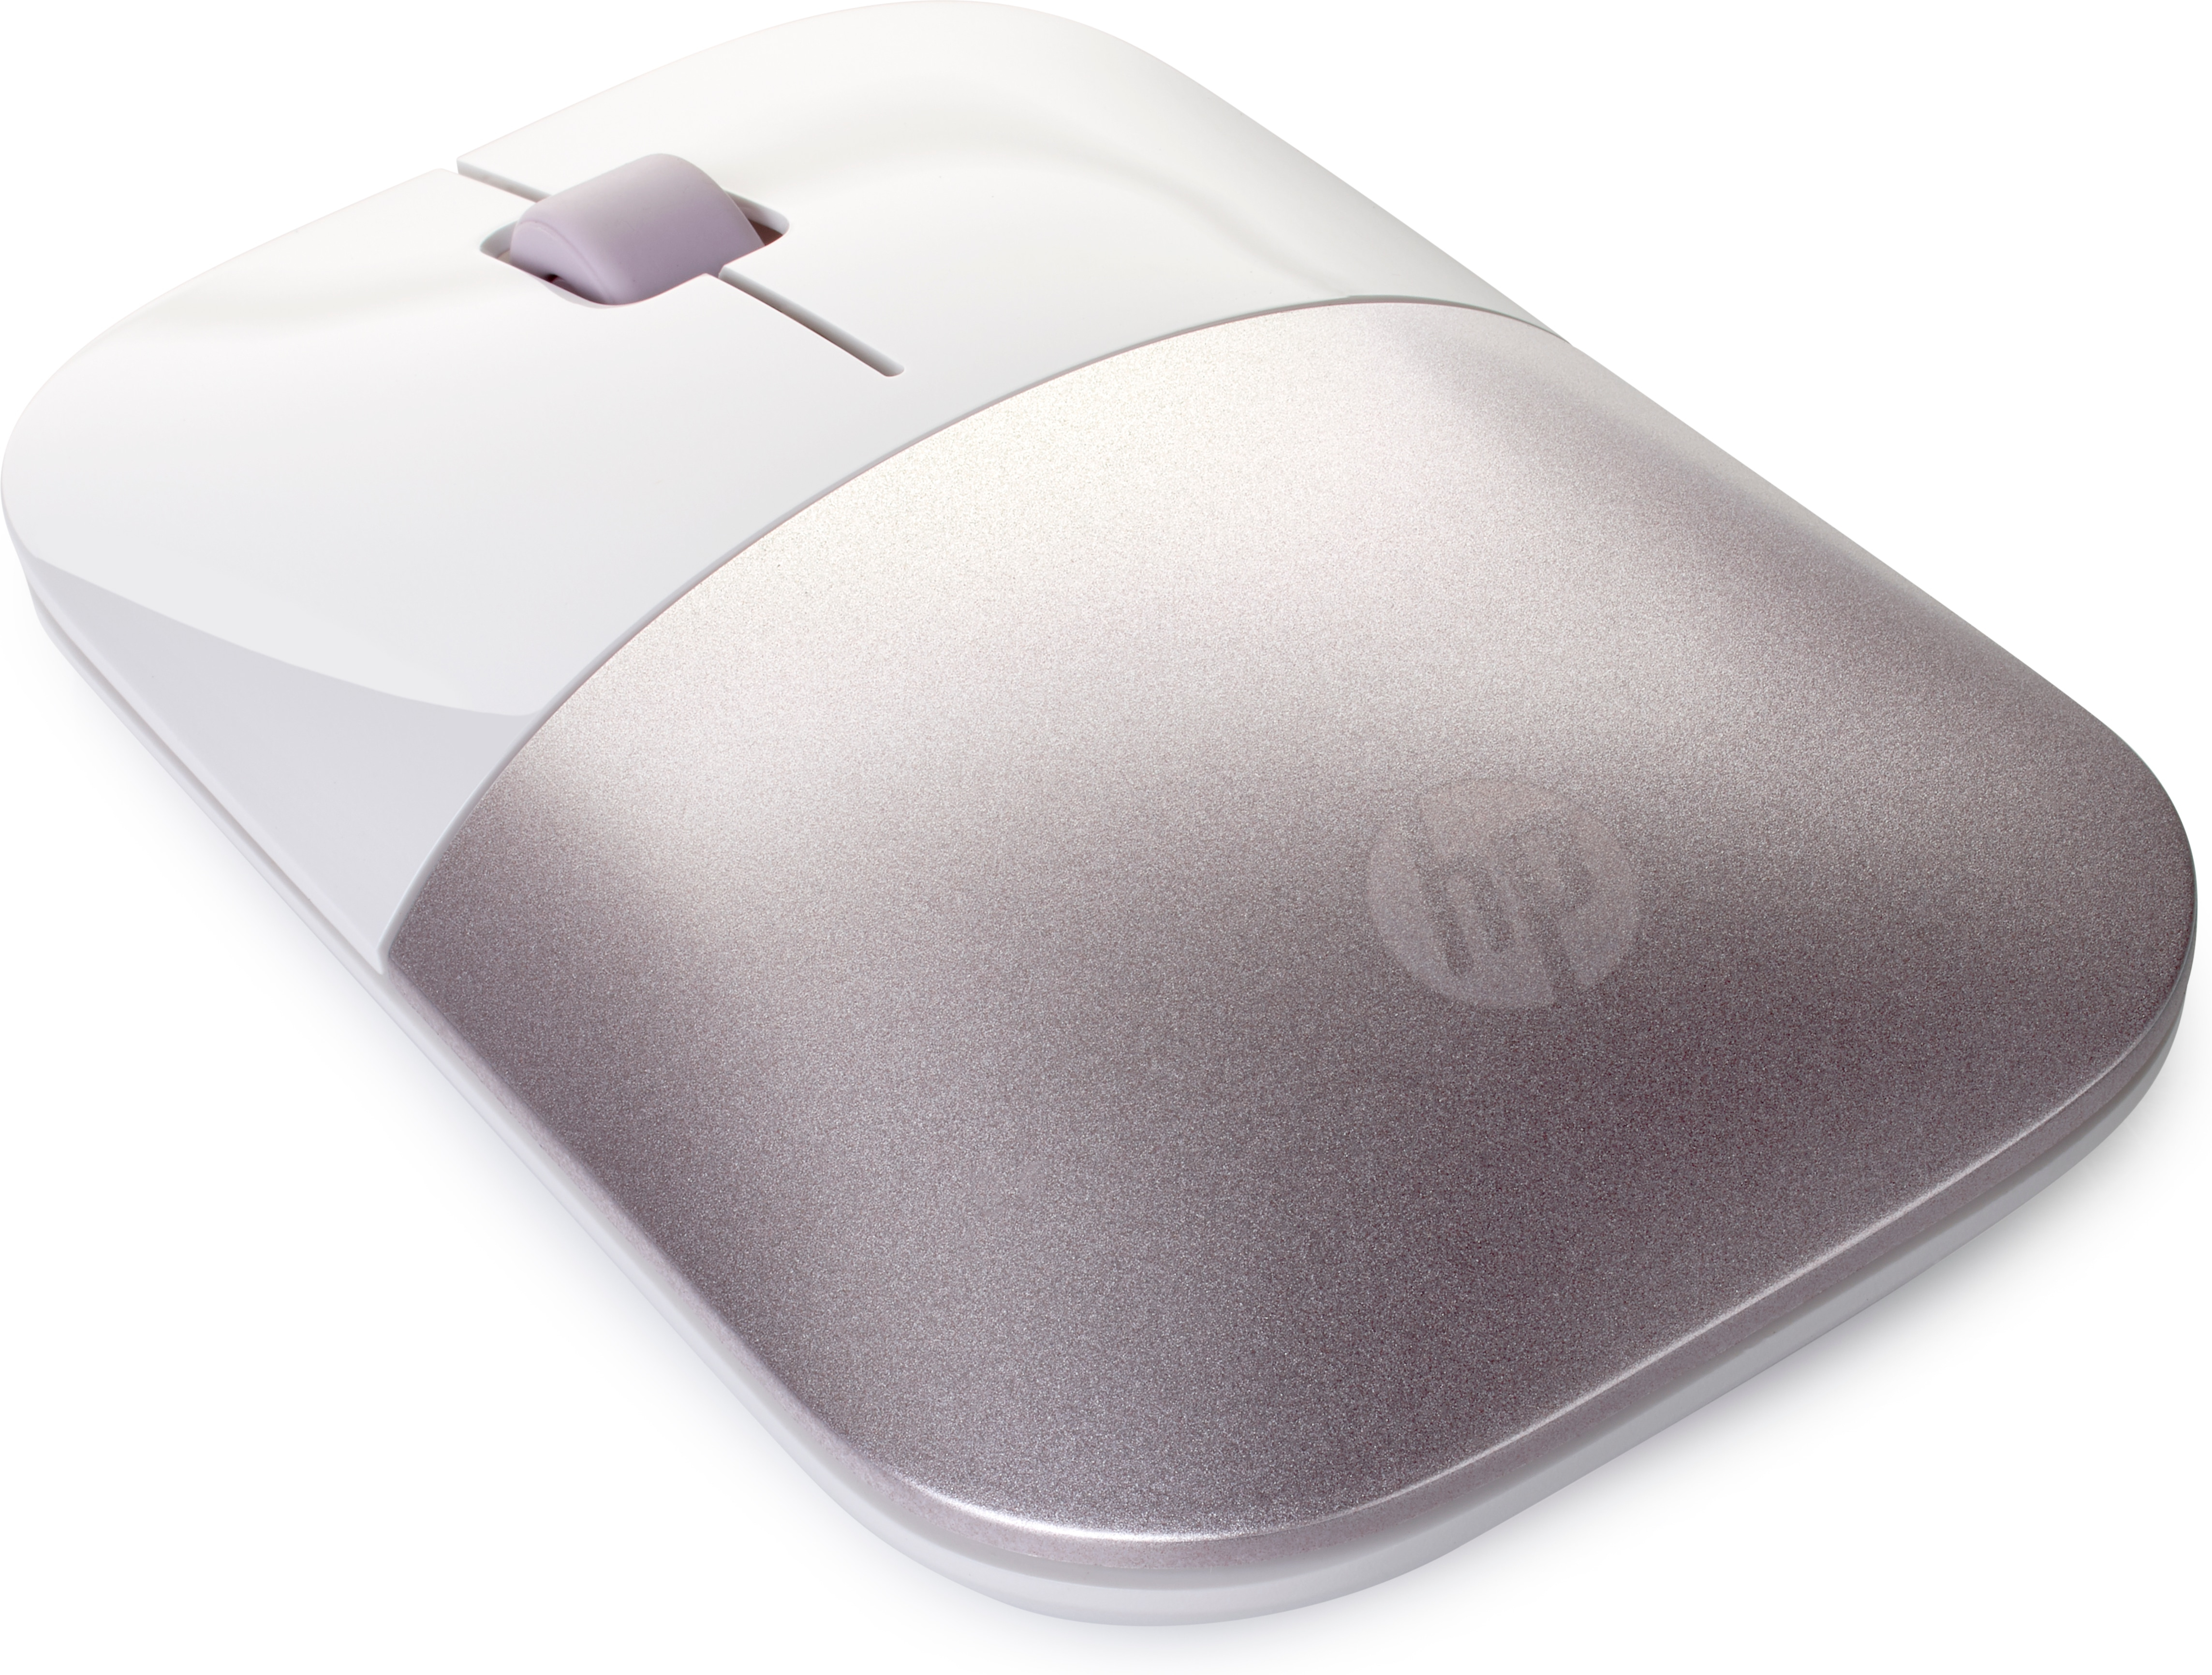 HP Z3700 - Beidhändig - RF Wireless - 1200 DPI - Pink - Weiß